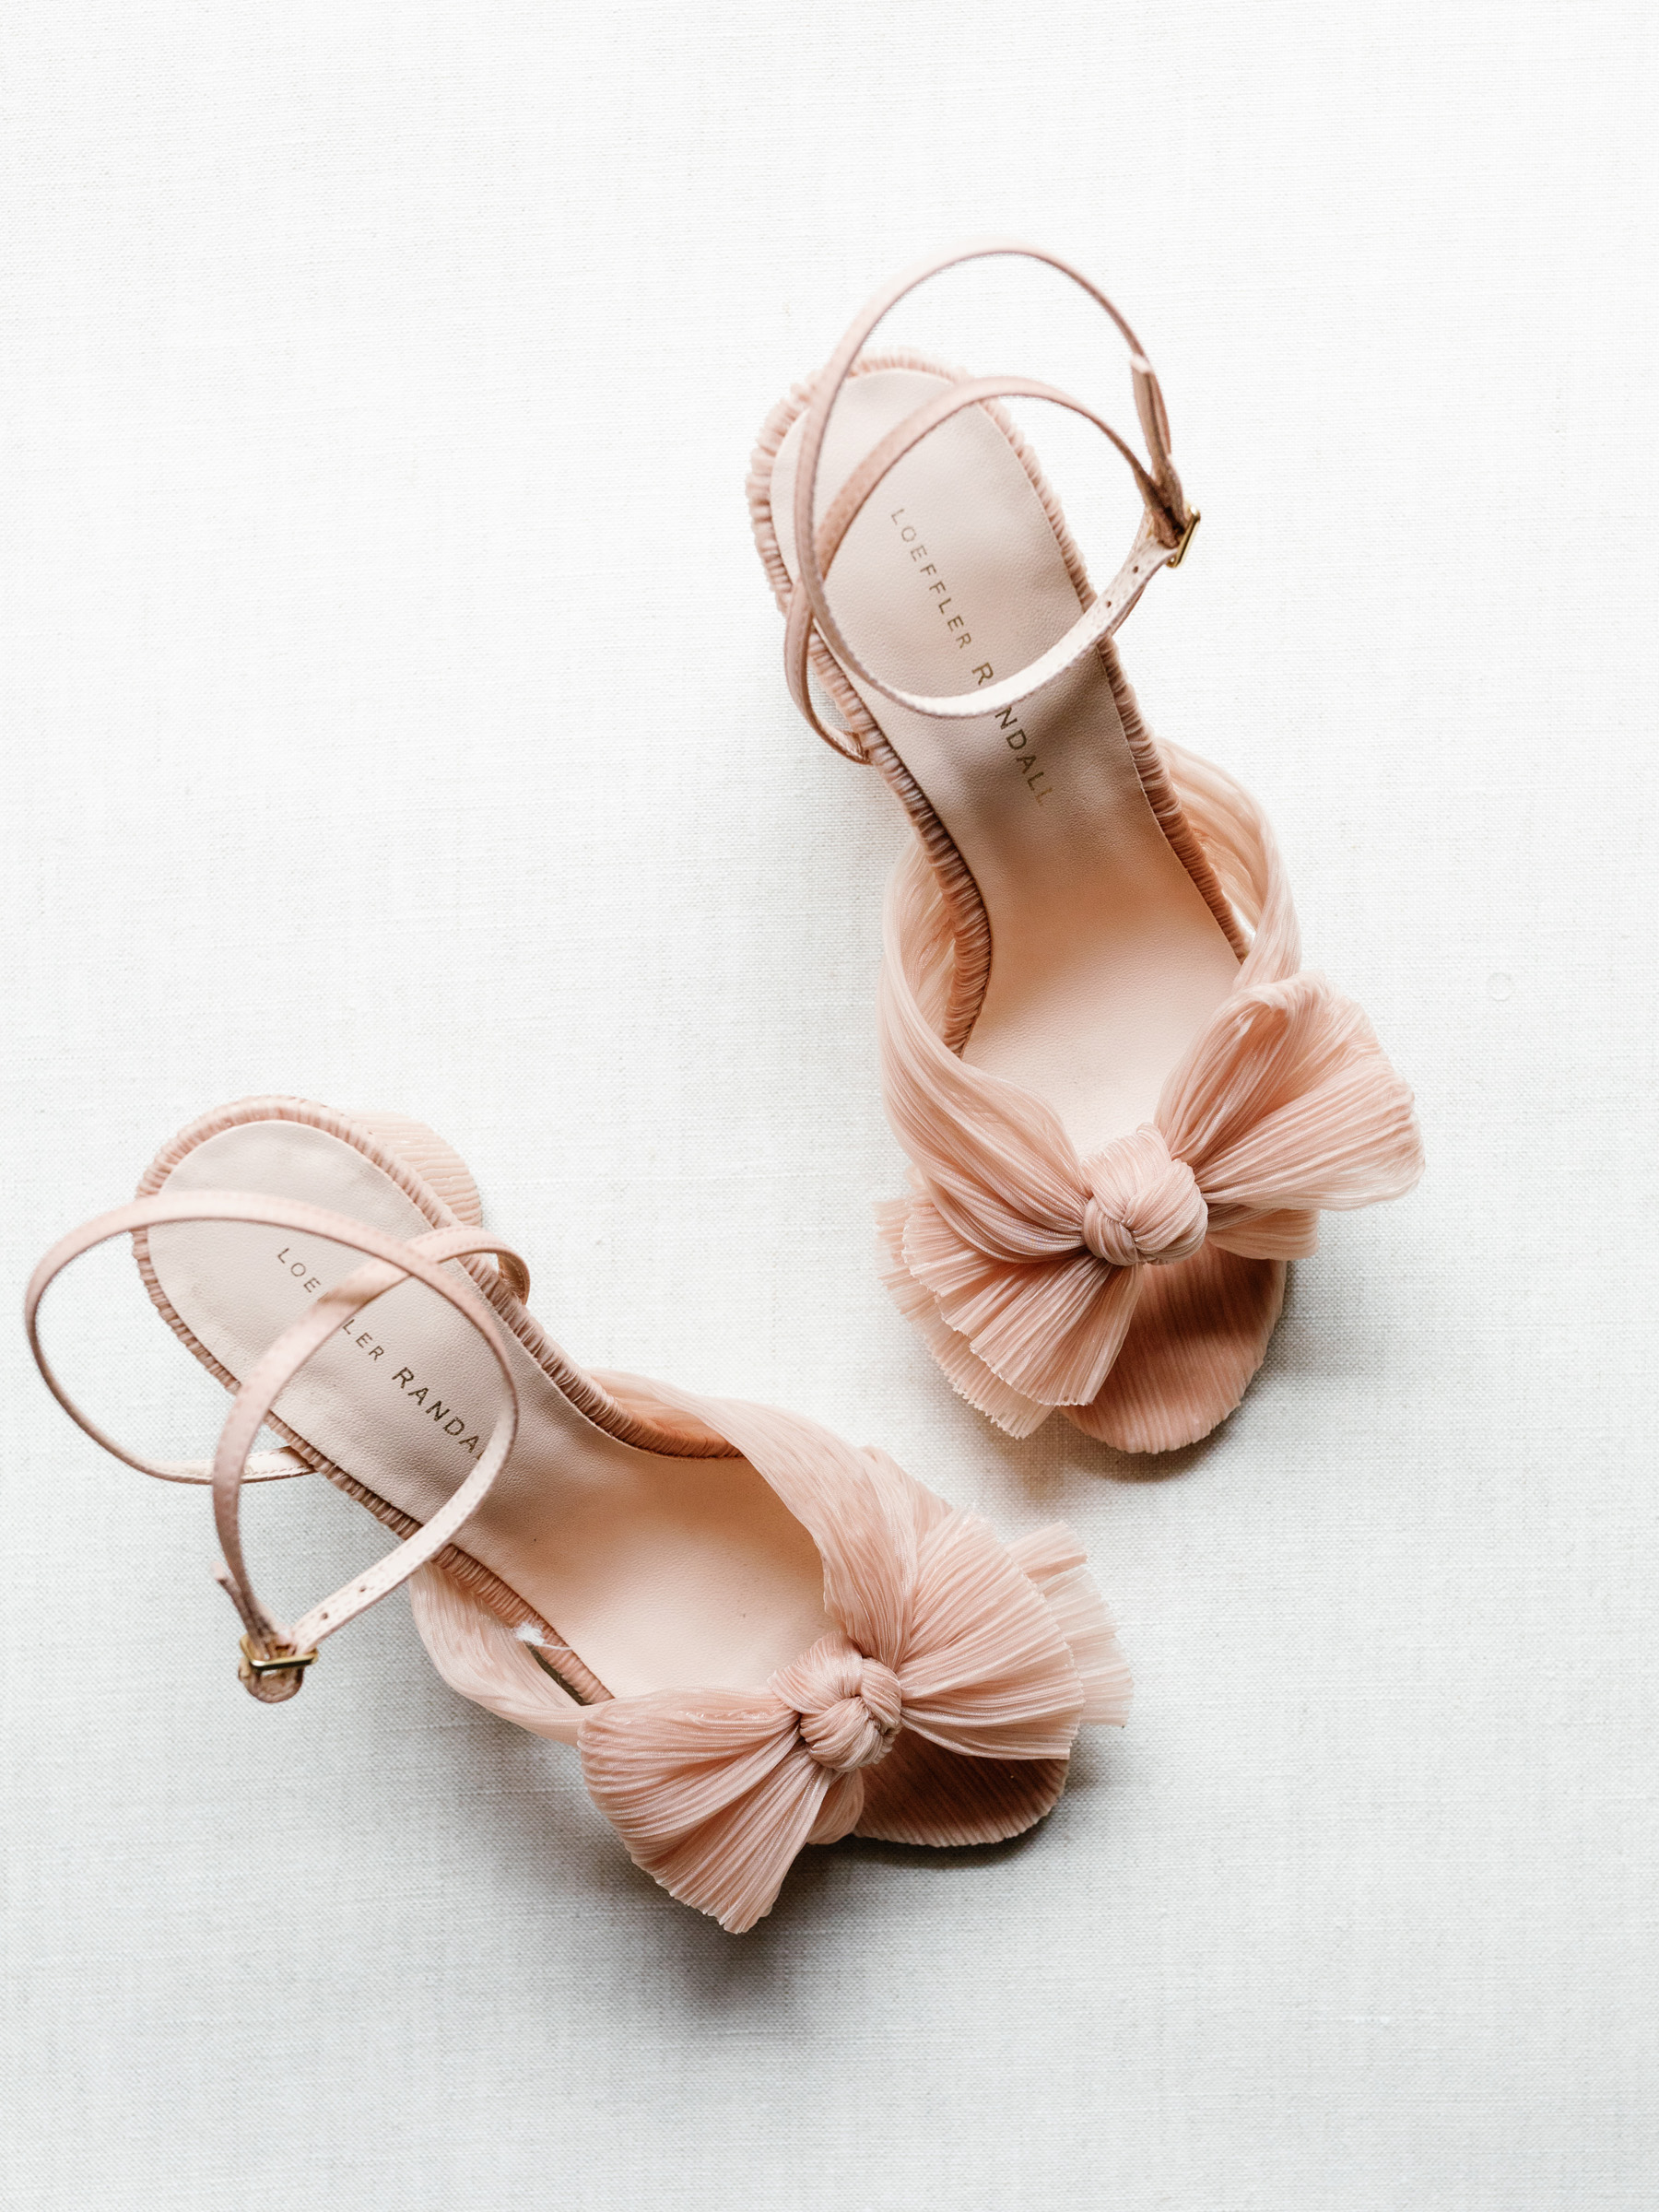 Loeffler Randal Camellia Sandal wedding shoes